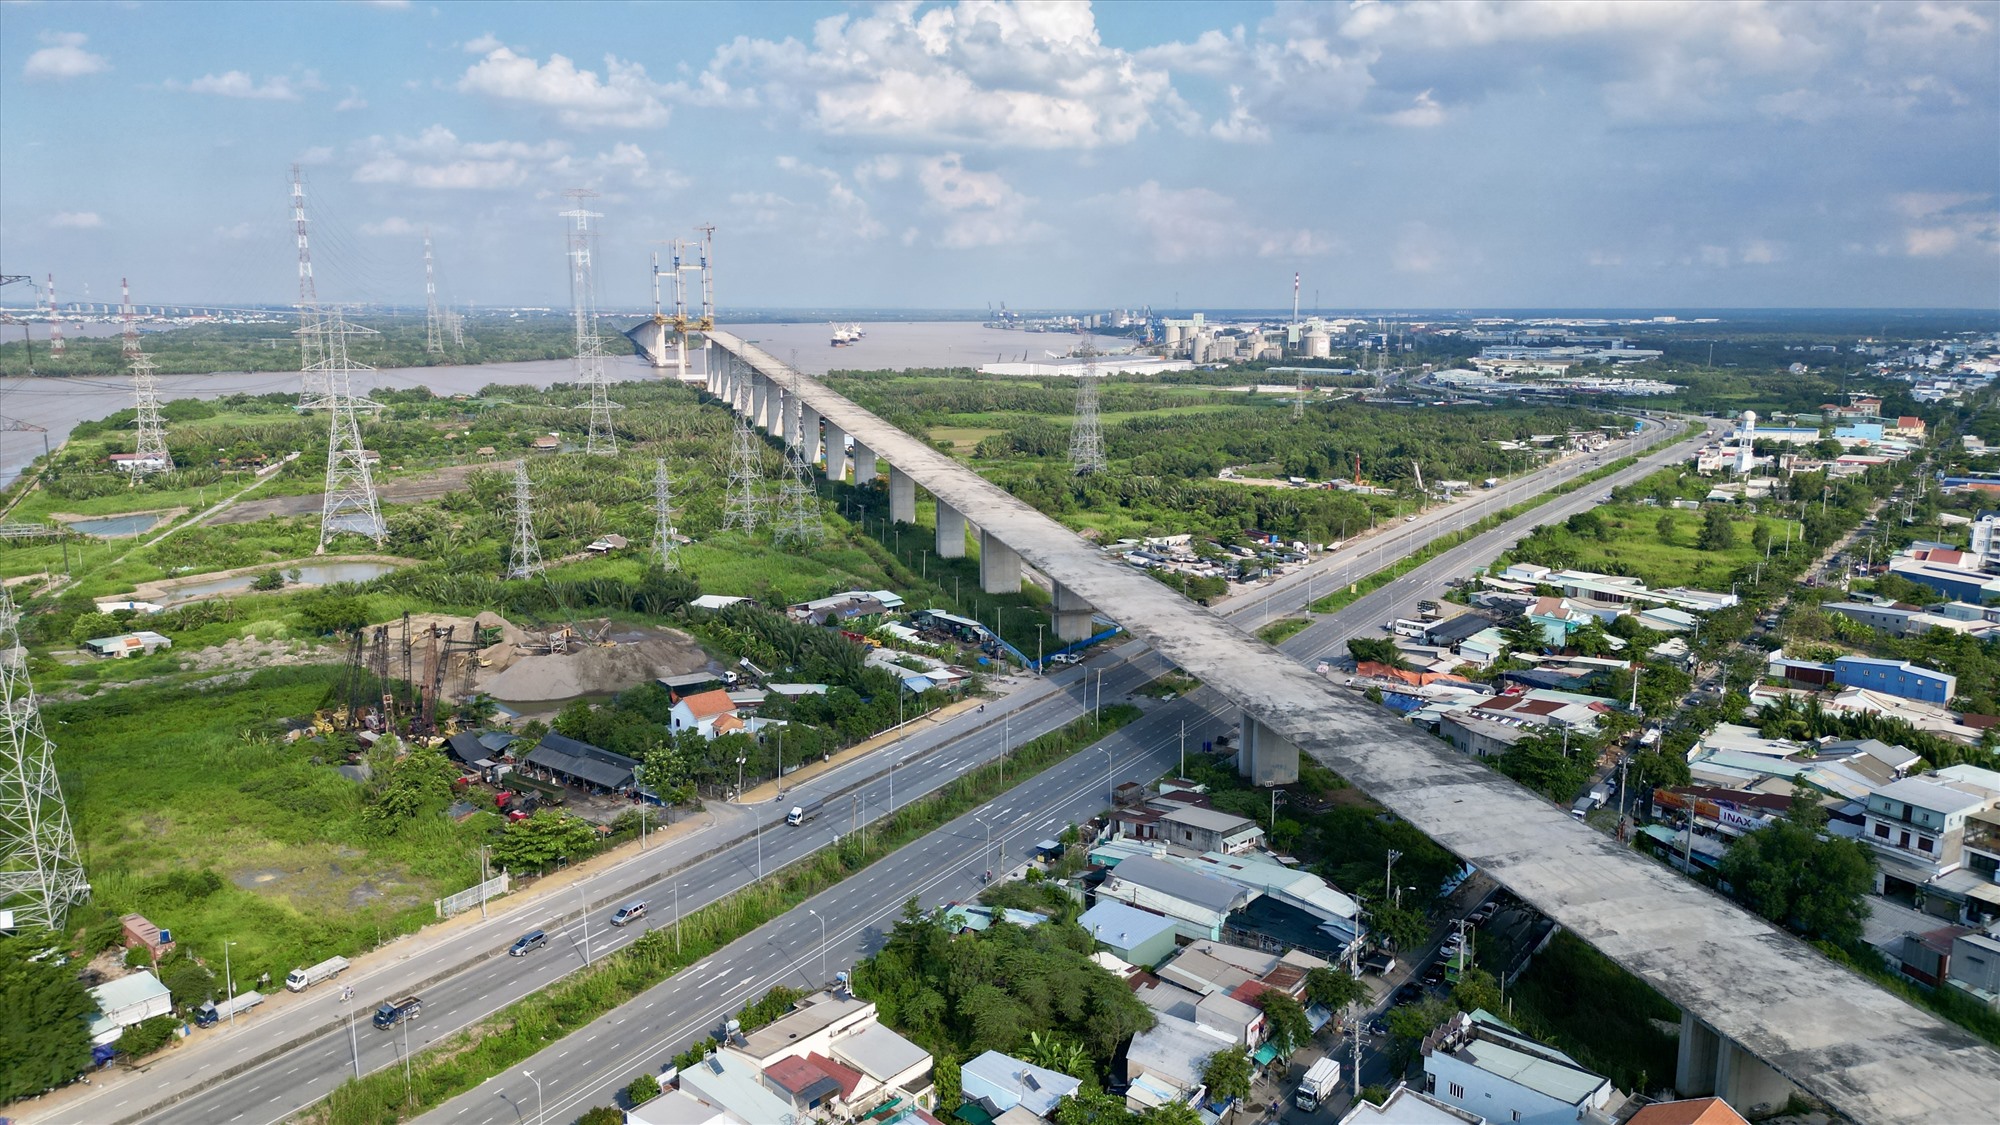 Tuyến cao tốc Bến Lức - Long Thành đi qua huyện Nhà Bè có điểm cuối tại cầu Bình Khánh. Cầu này khởi công 8.2015, dài 2,76 km, nhịp chính dài 375 m bắc qua sông Soài Rạp, nối huyện Nhà Bè và Cần Giờ. Đây là một trong những công trình quan trọng nhất thuộc dự án.